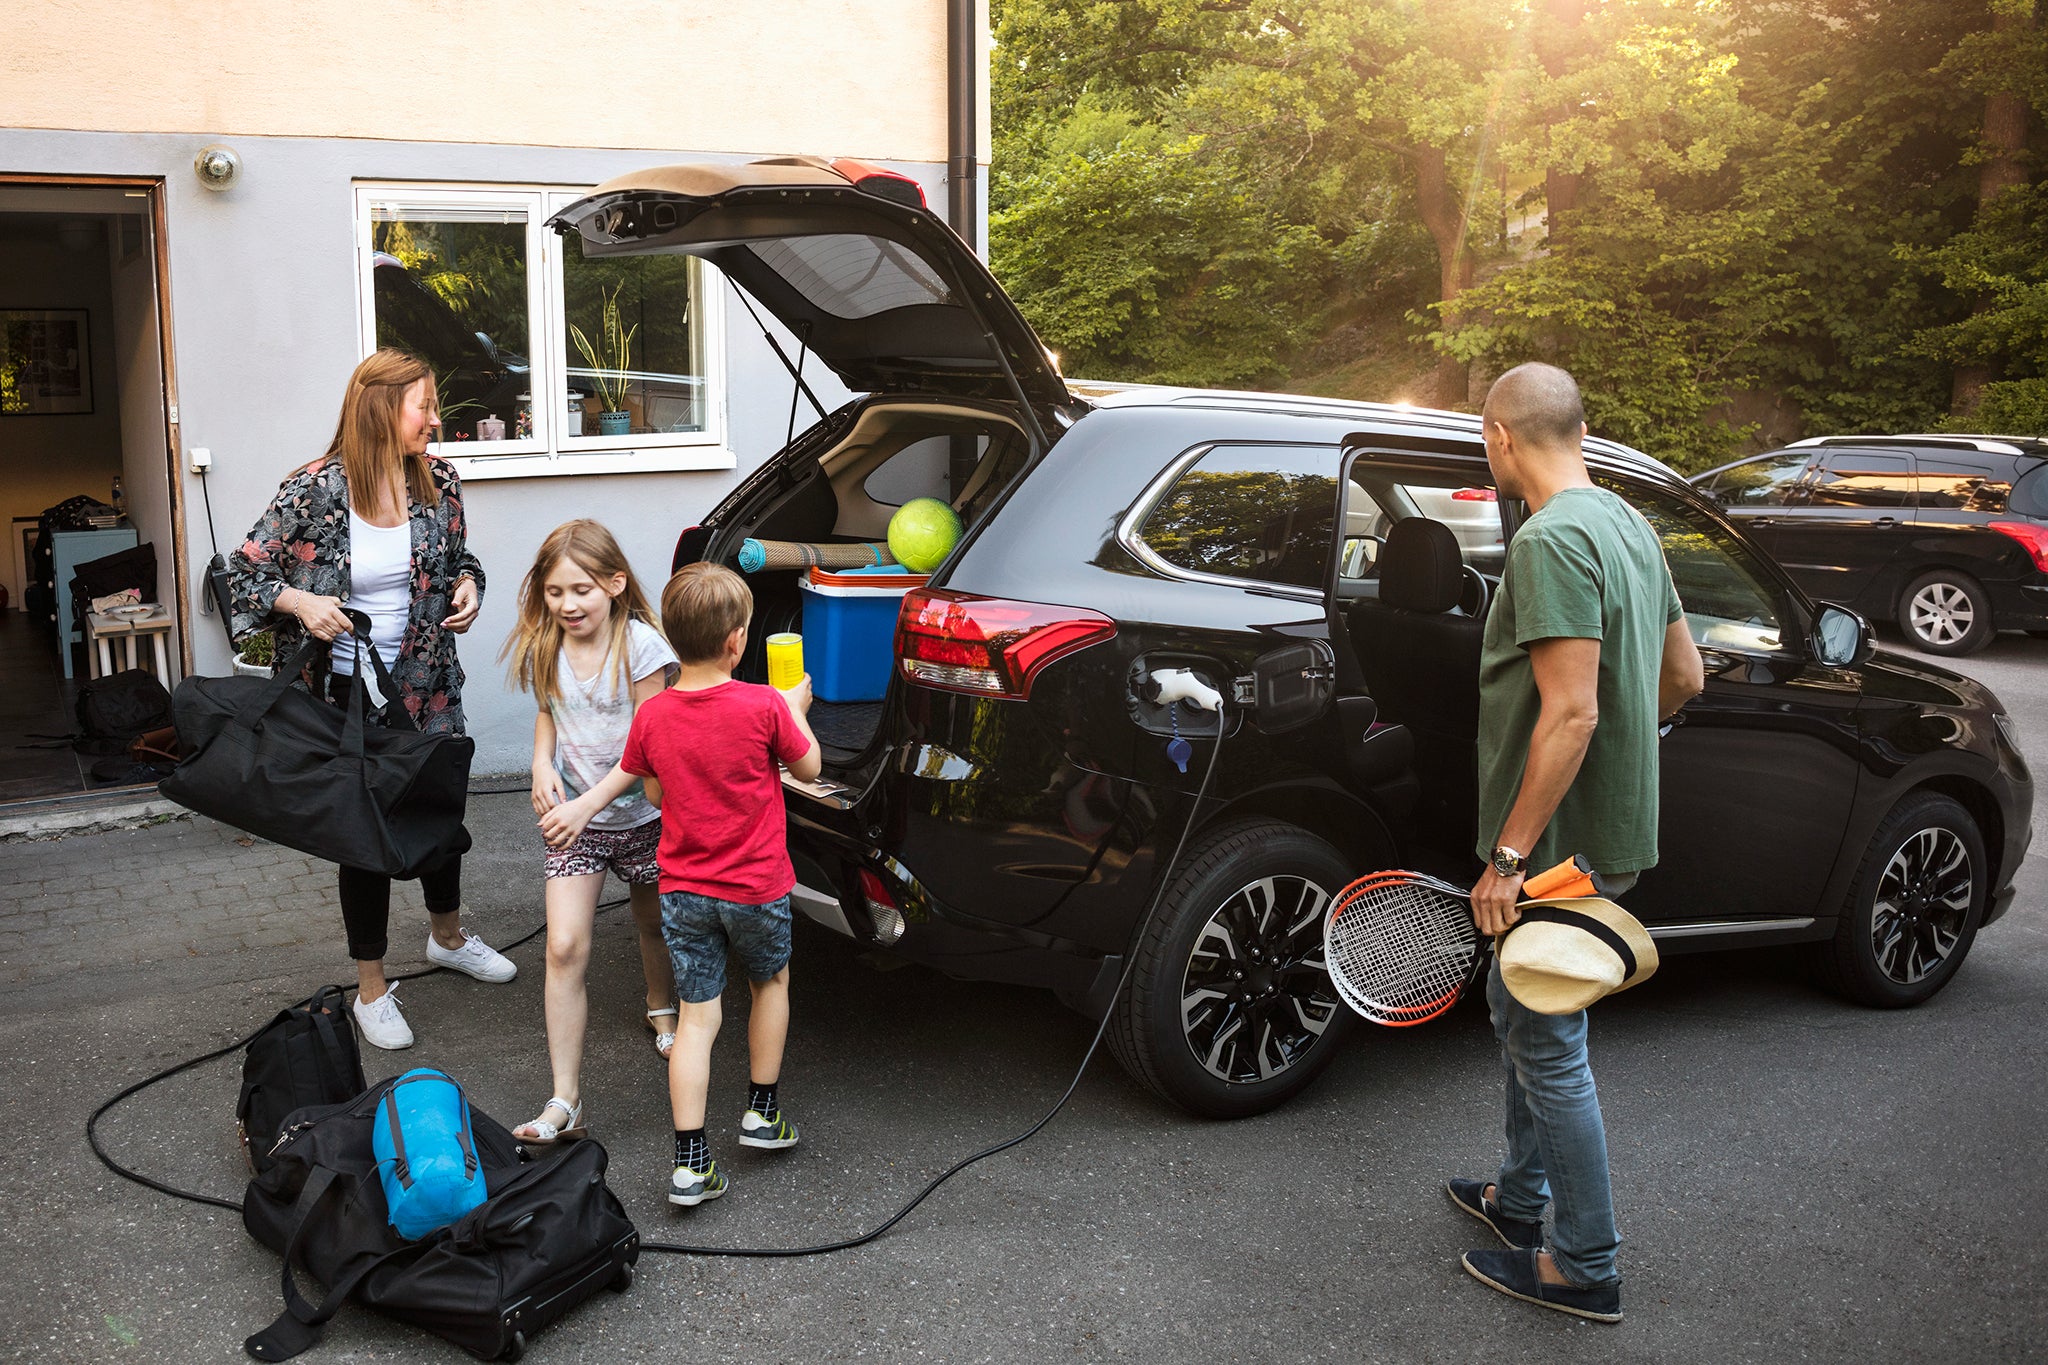  En familj lastar sin bil, redo för semester.